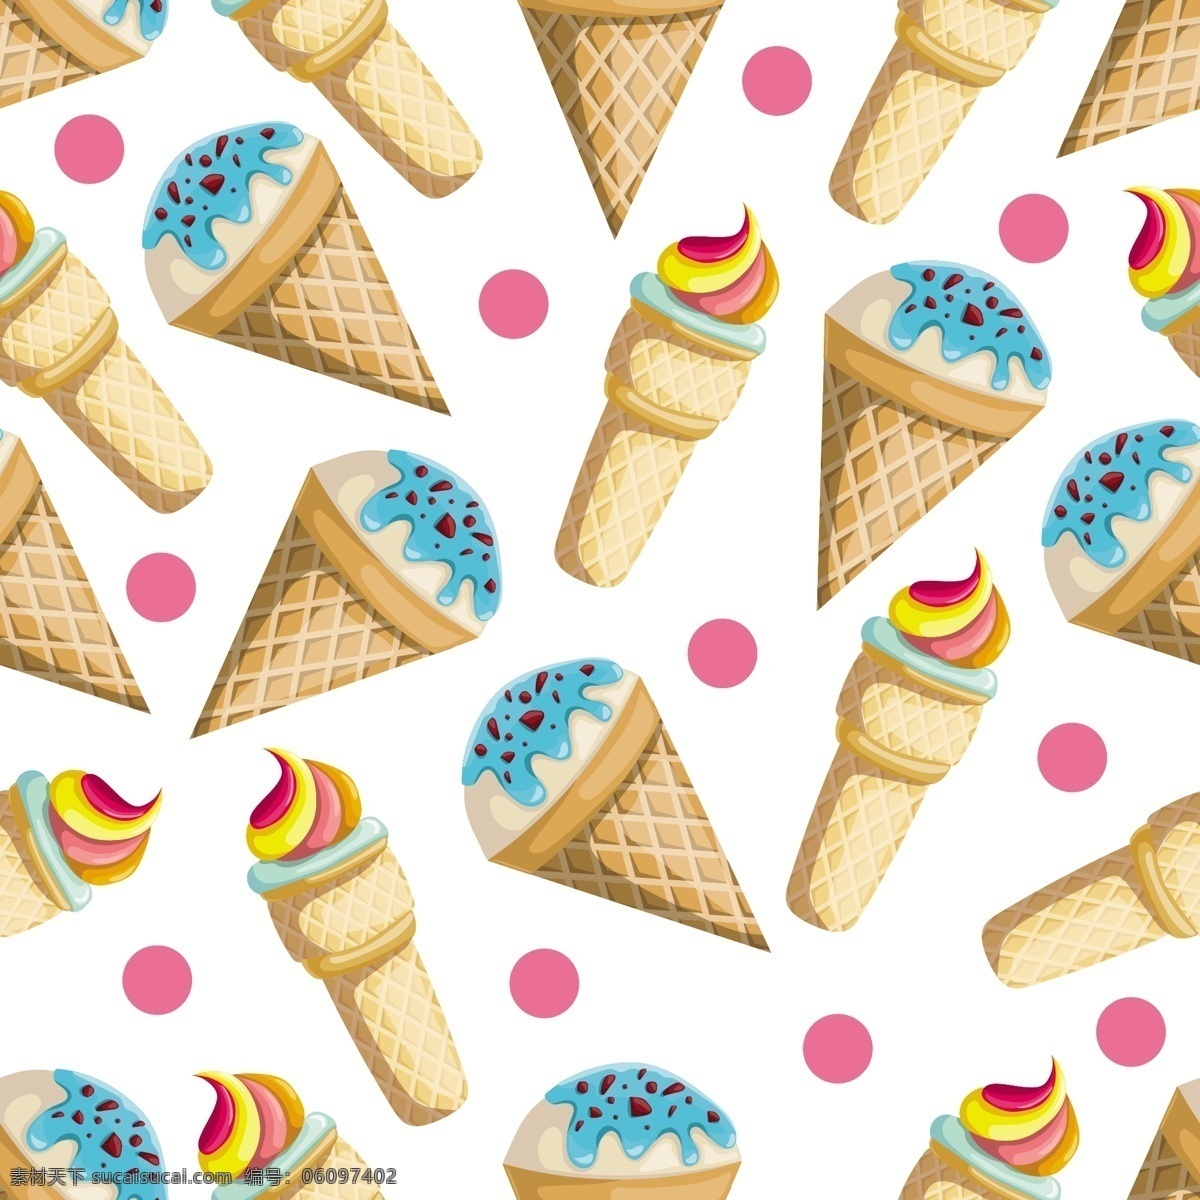 彩色 冰淇淋 图案 矢量